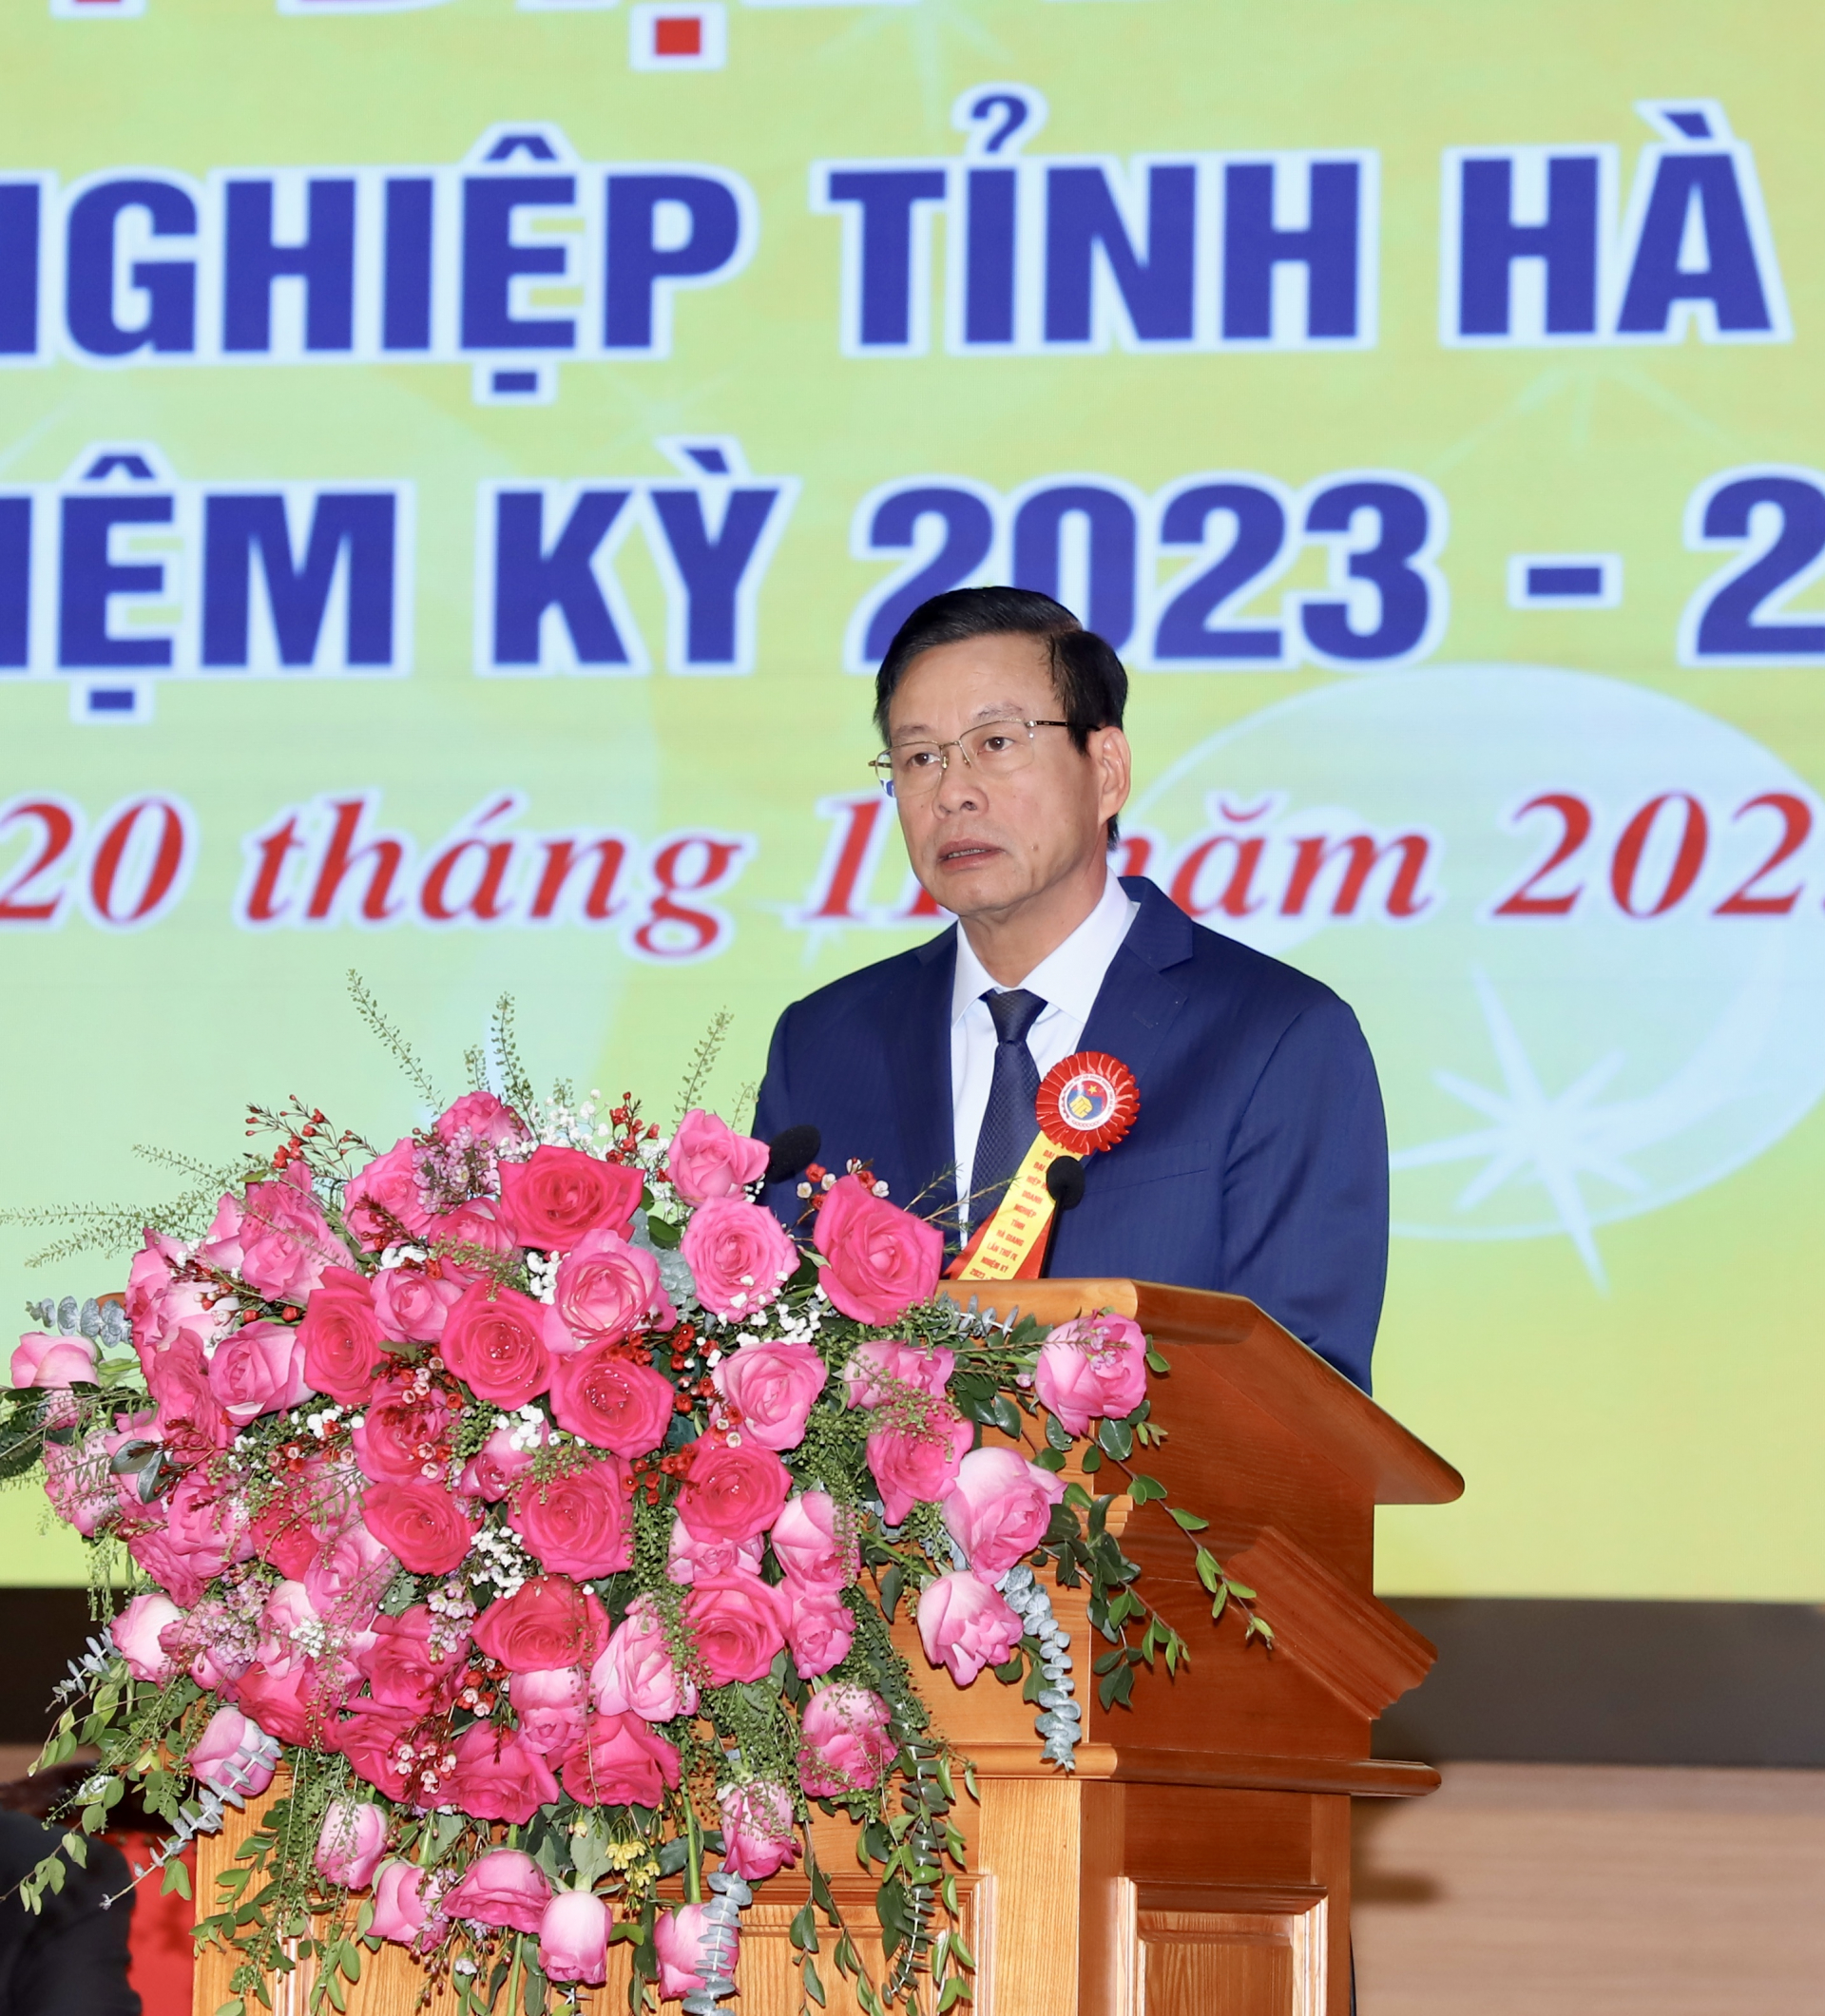 Chủ tịch UBND tỉnh Nguyễn Văn Sơn, Chủ tịch danh dự Hiệp hội Doanh nghiệp tỉnh phát biểu chỉ đạo tại đại hội